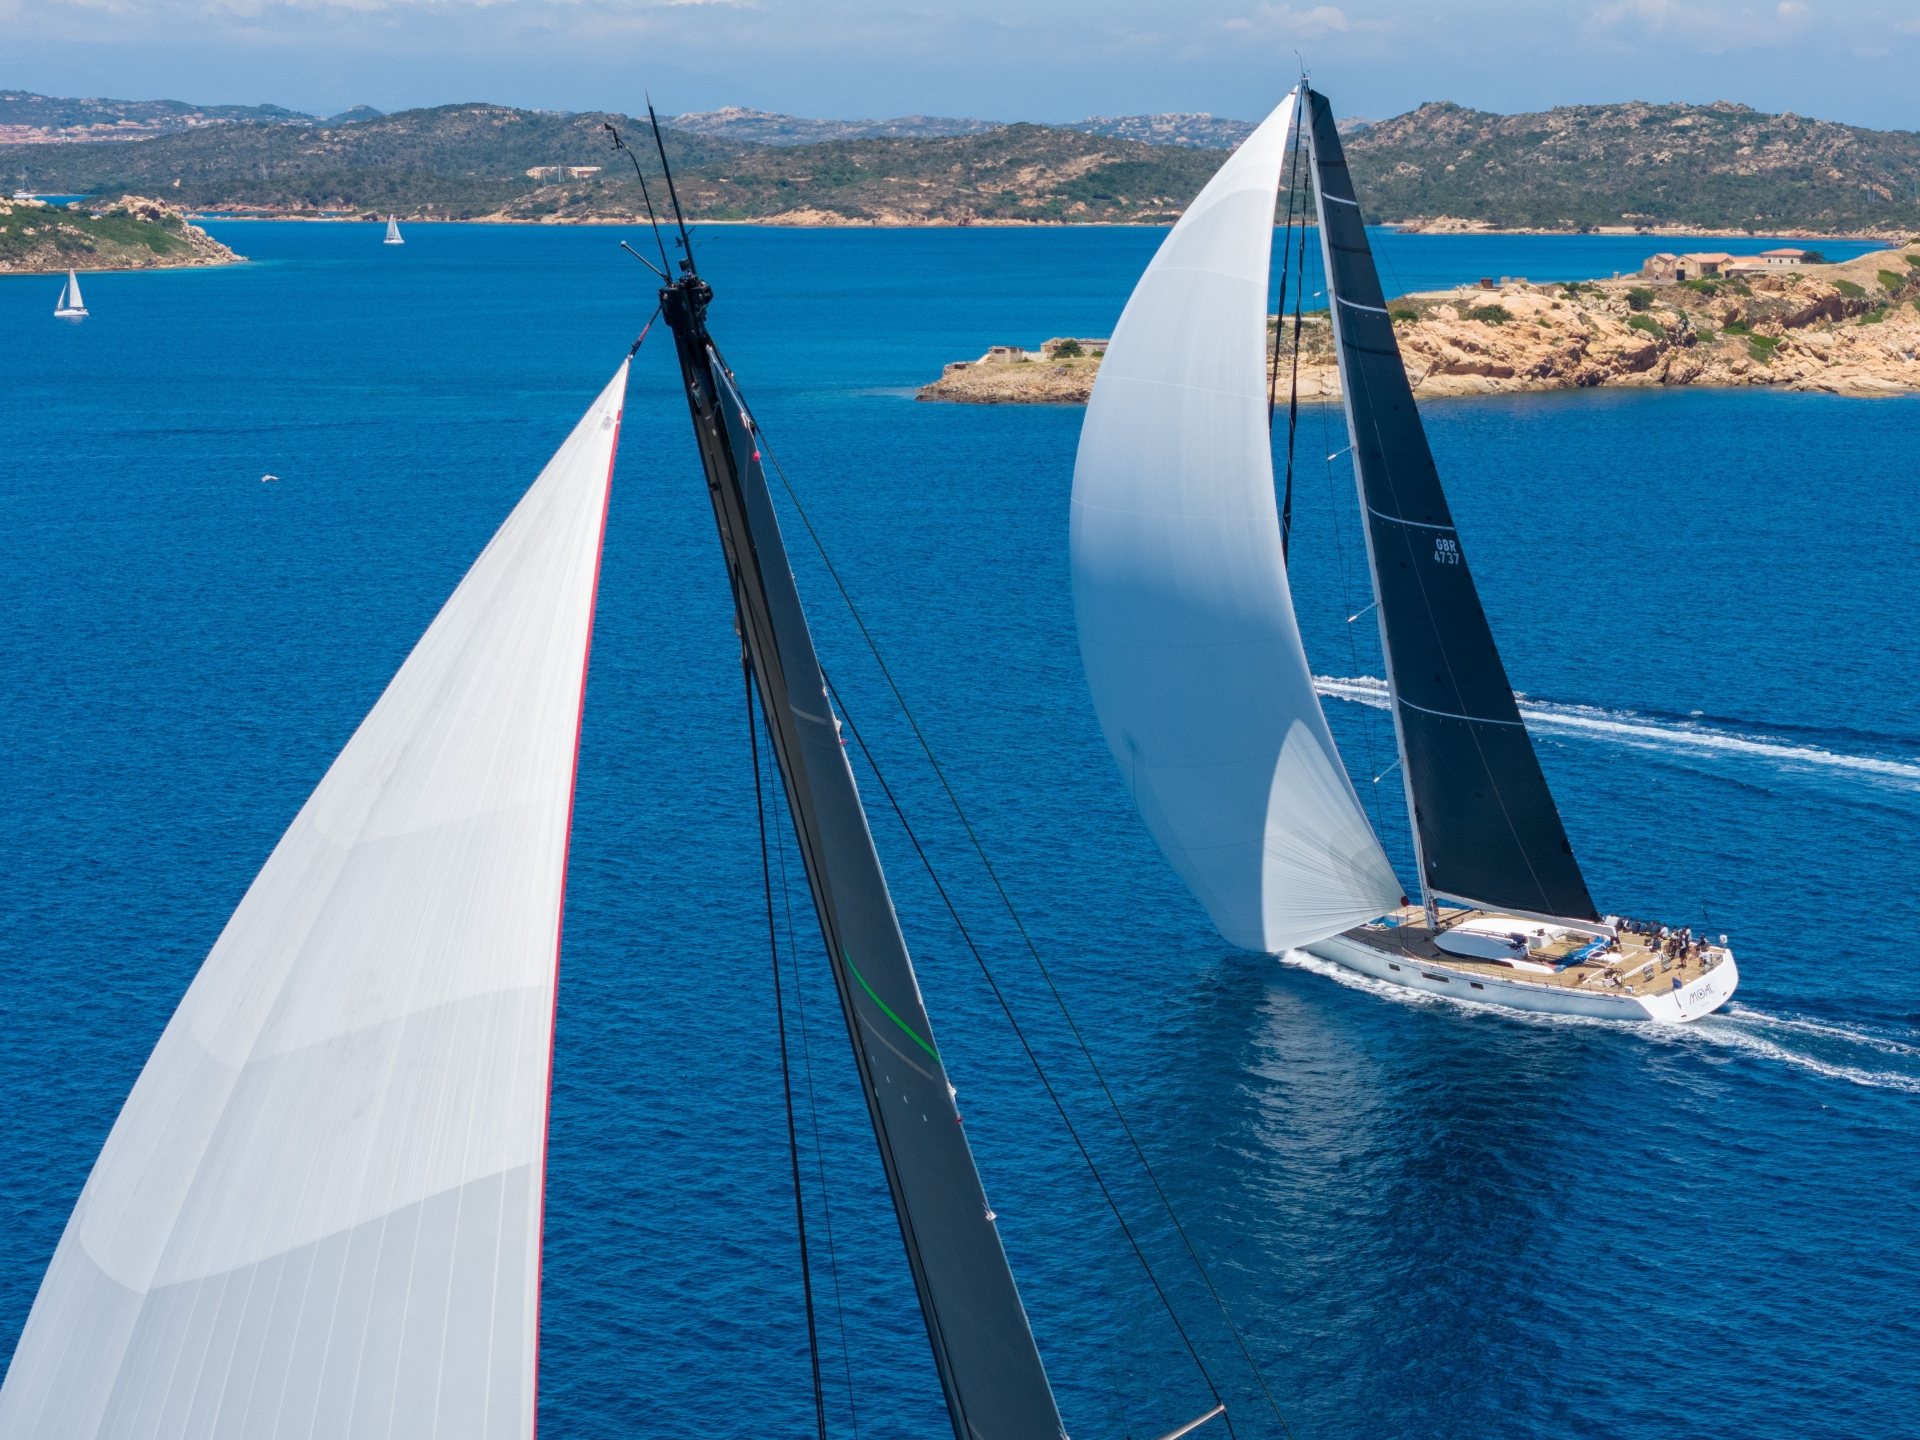 Giorgio Armani Superyacht Regatta, un perfetto equilibrio tra sport e lifestyle  - NEWS - Yacht Club Costa Smeralda